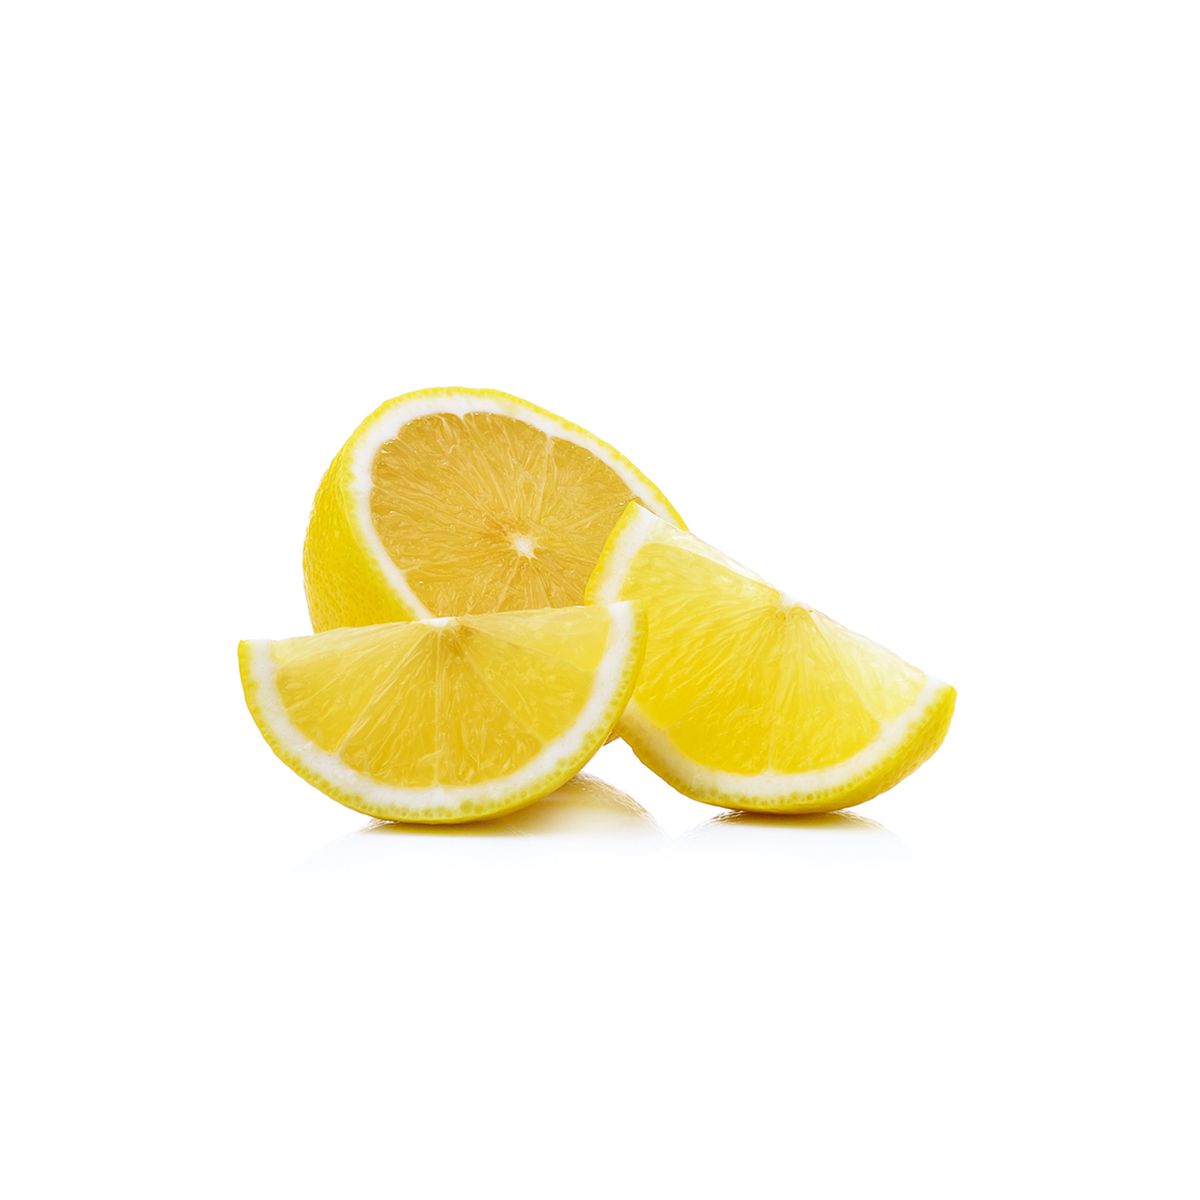 BoxNCase Lemon Wedges 5 LB